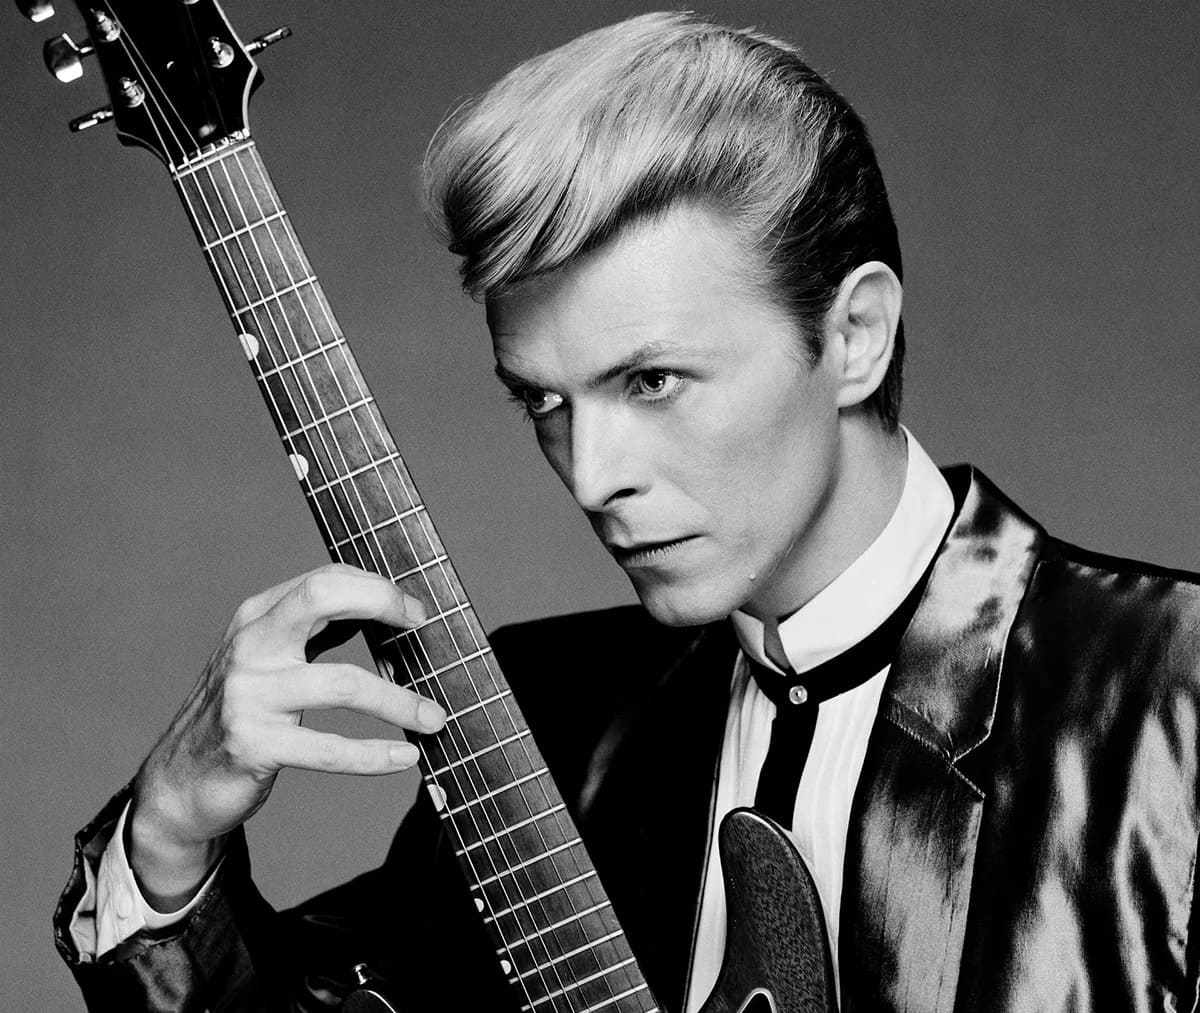 O lendário "camaleão de pedra" David Bowie